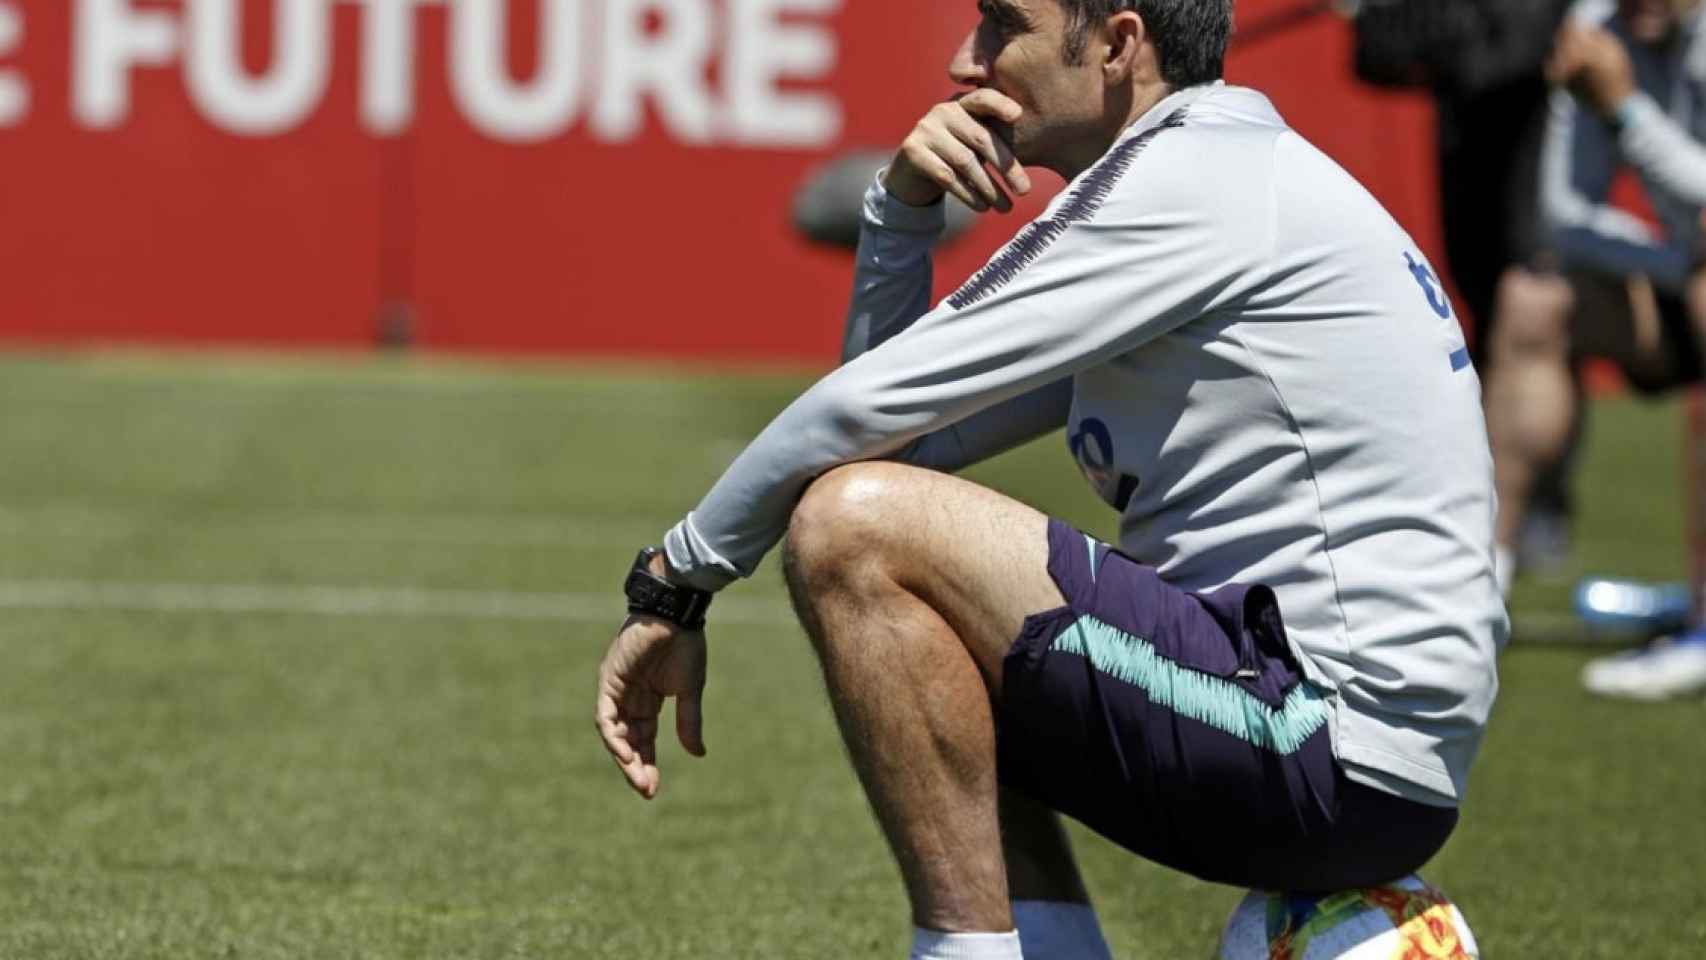 Una foto de Ernesto Valverde durante un entrenamiento del Barça / FCB